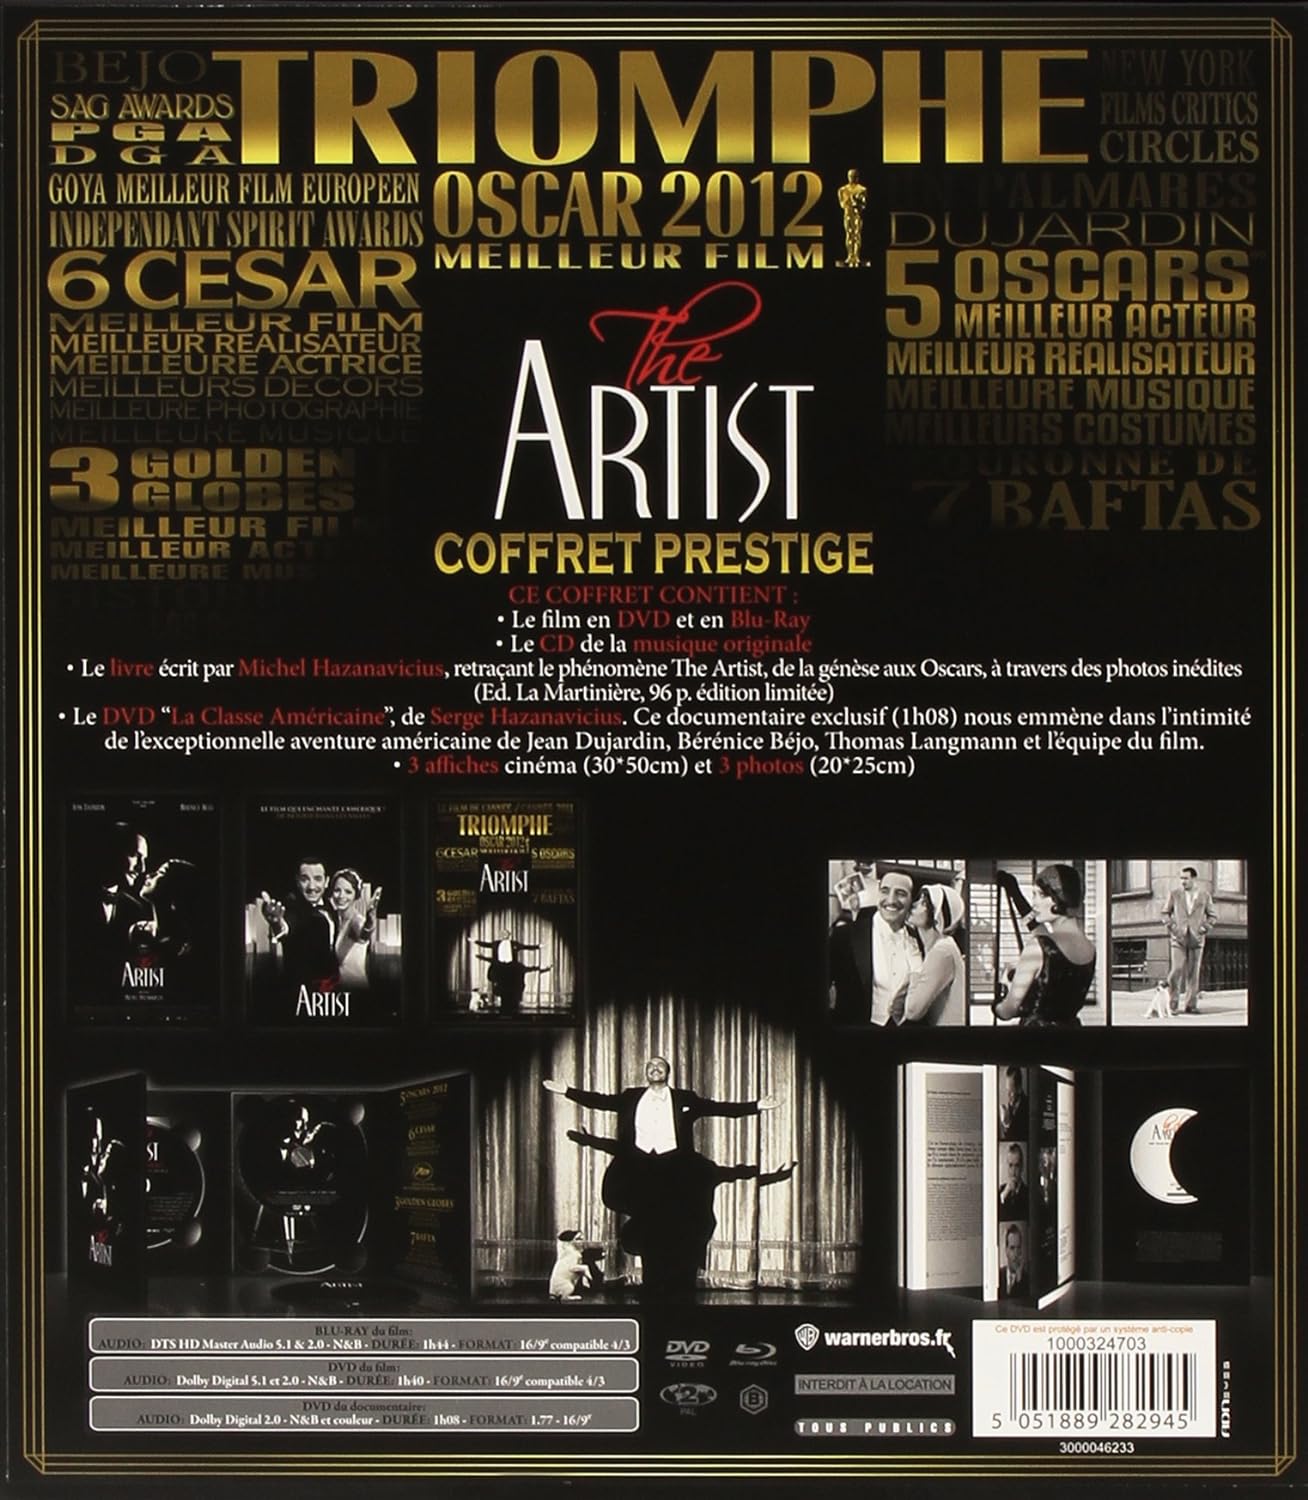 Артист (2011) (Blu-ray + DVD + CD) Collector's Prestige Edition